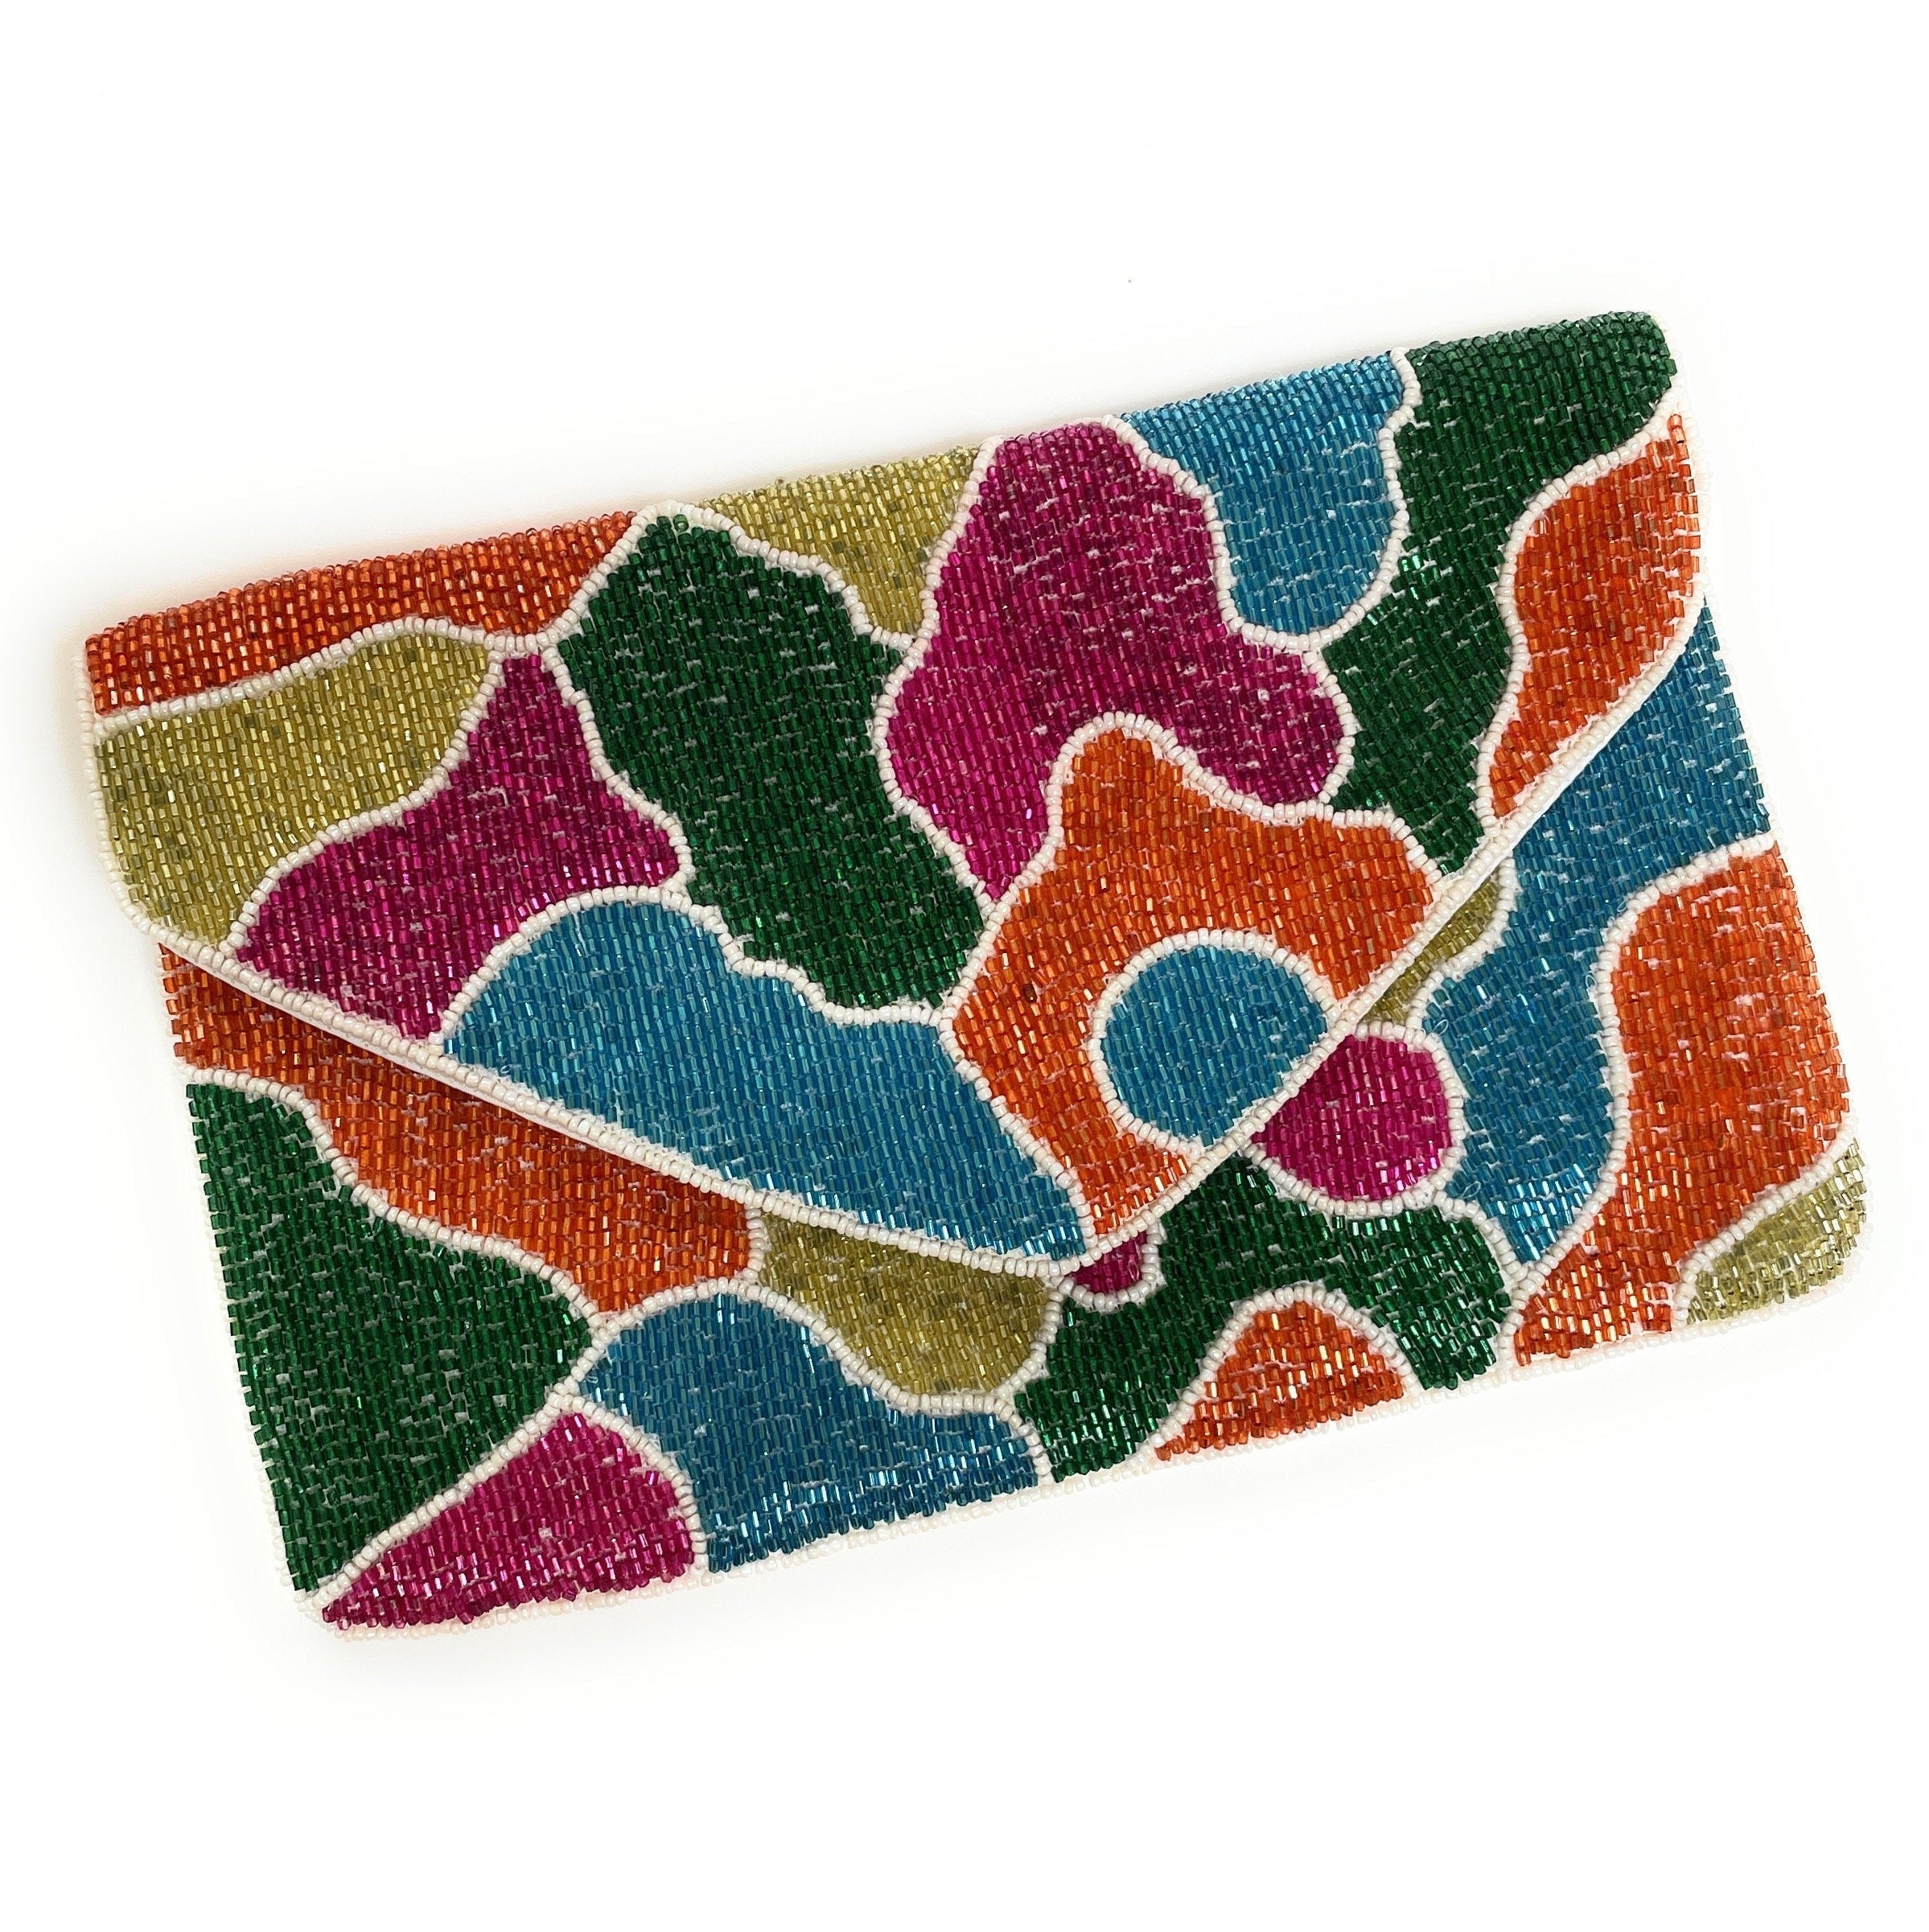 UNIQUE Shoulder Bag Handmade Embroidery Multicolor Bag Handbag Clutch Purse  w/ strap